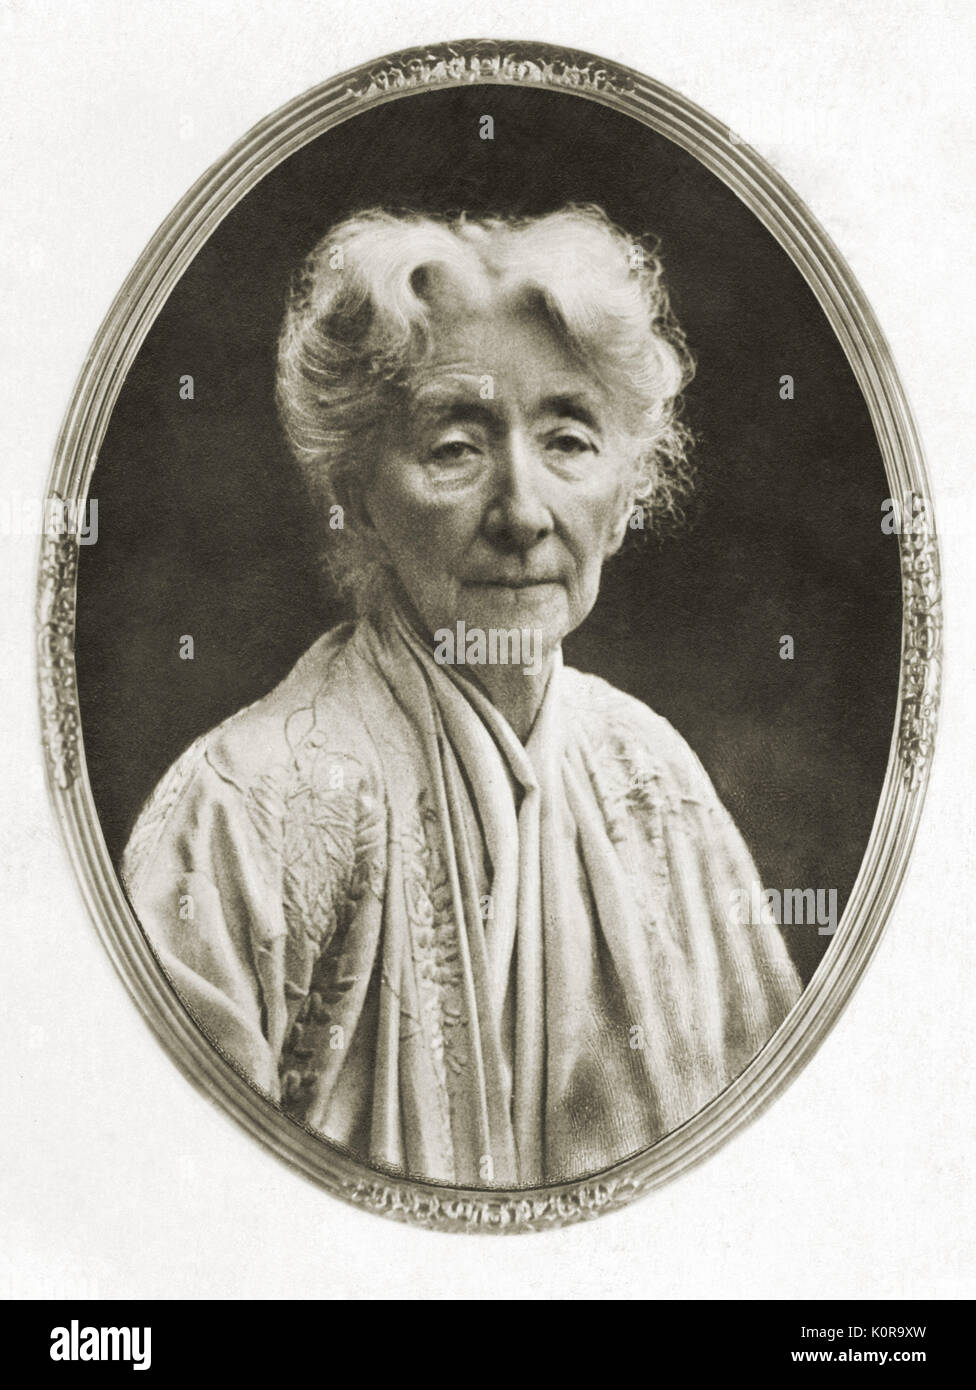 Cosima Wagner (1837-1930), Tochter von Liszt und der Gräfin Marie d'Agoult. Heiratete Hans von Bülow 1857, geschieden, Juli 18.1870, Wagner Aug 25 1870 verheiratet. Stockfoto